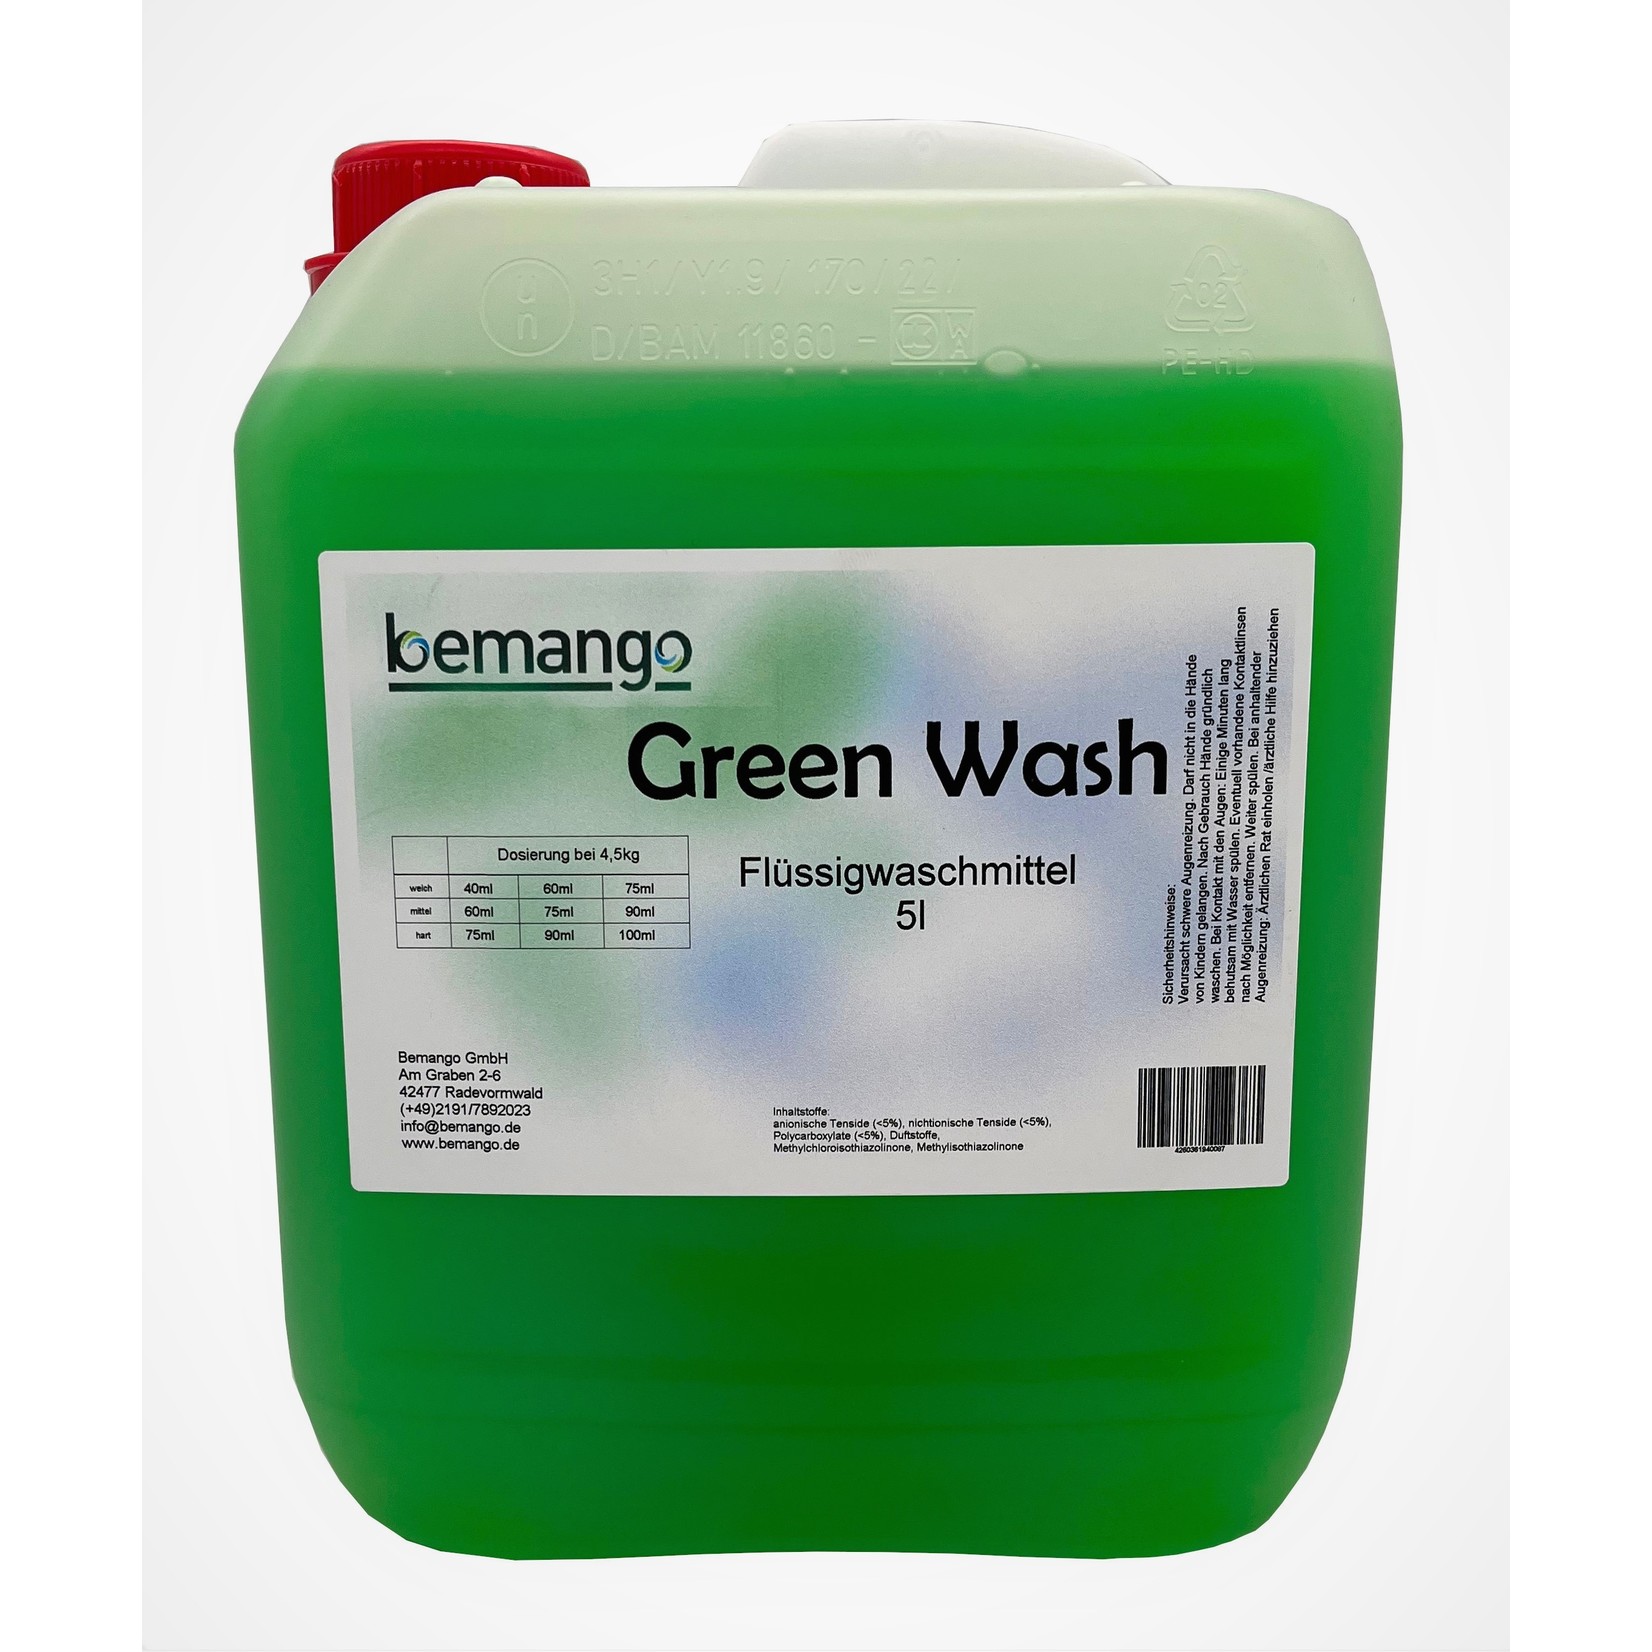 Bemango GREEN WASH, 5 Liter Vollwaschmittel